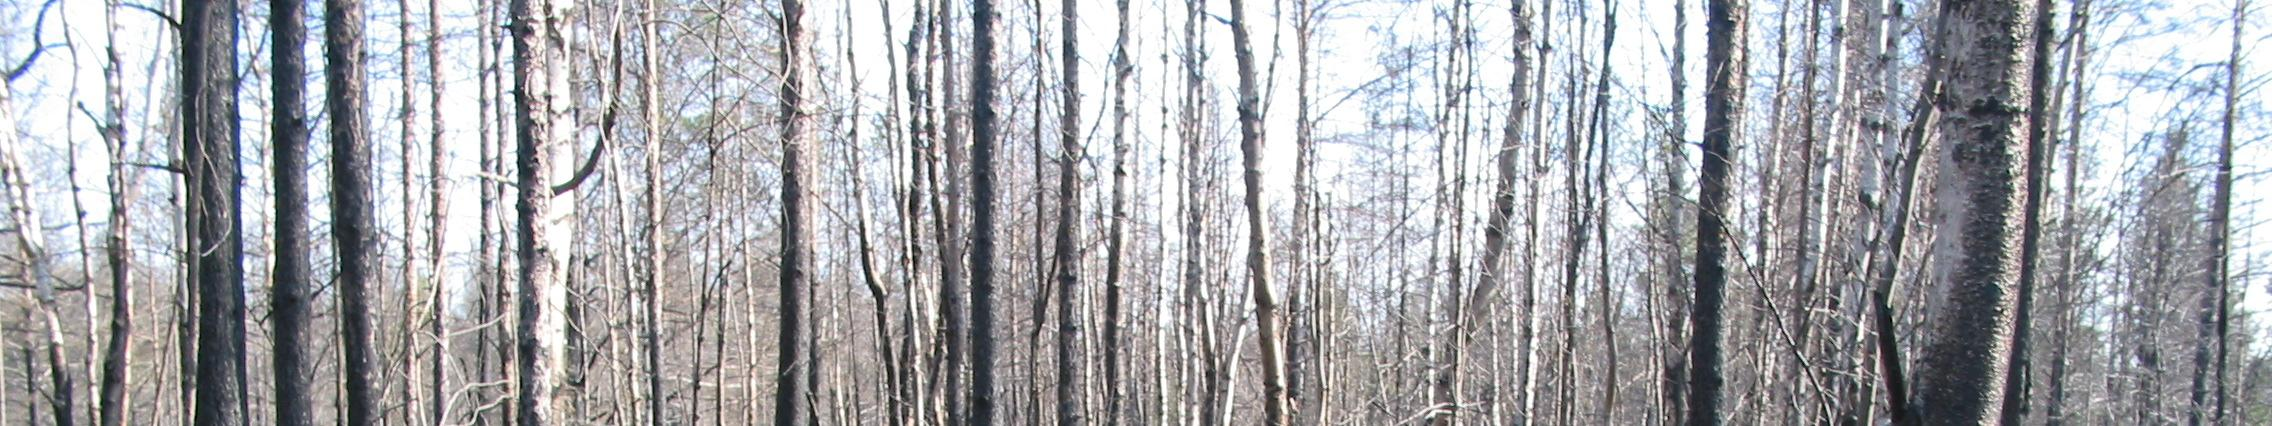 on lisätty puita räjäyttämällä ja kaatamalla. Kesällä 2006 maalialueella riehui laaja metsäpalo, joka tuotti kerralla paljon lahopuuta.